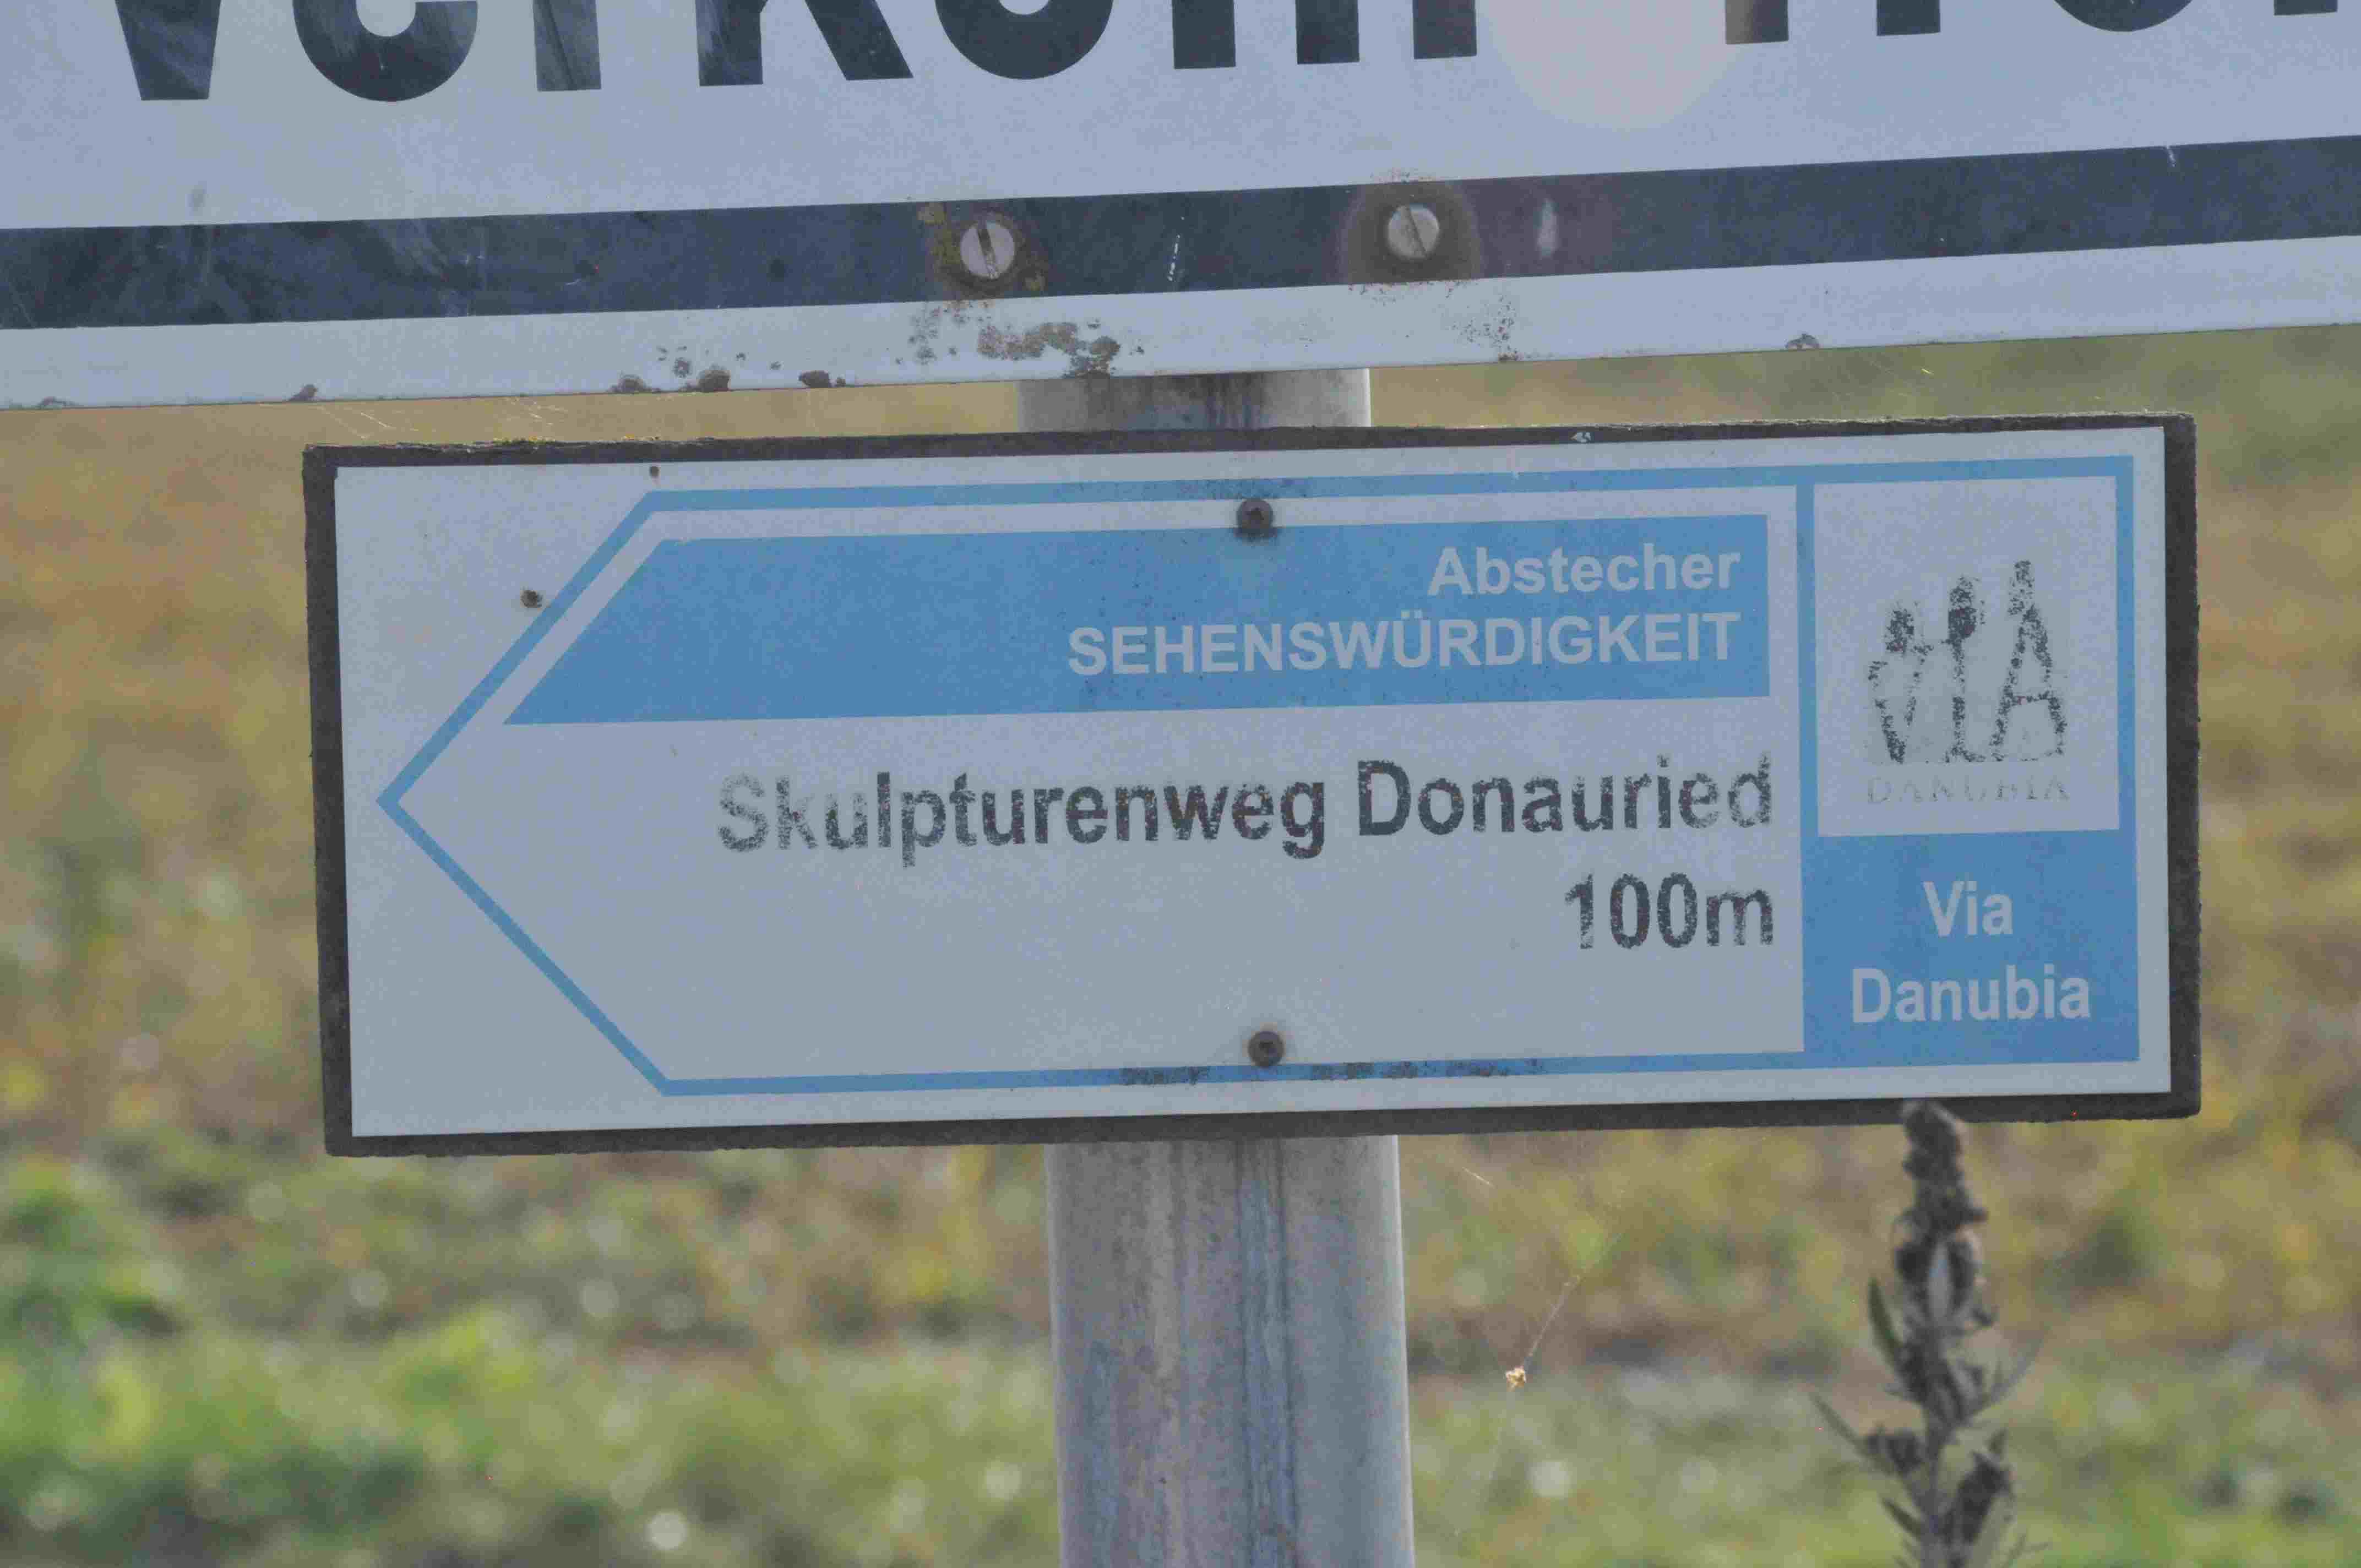 Skulpturenweg Donauried Pfaffenhofen Wegweiser von der Via Danubia